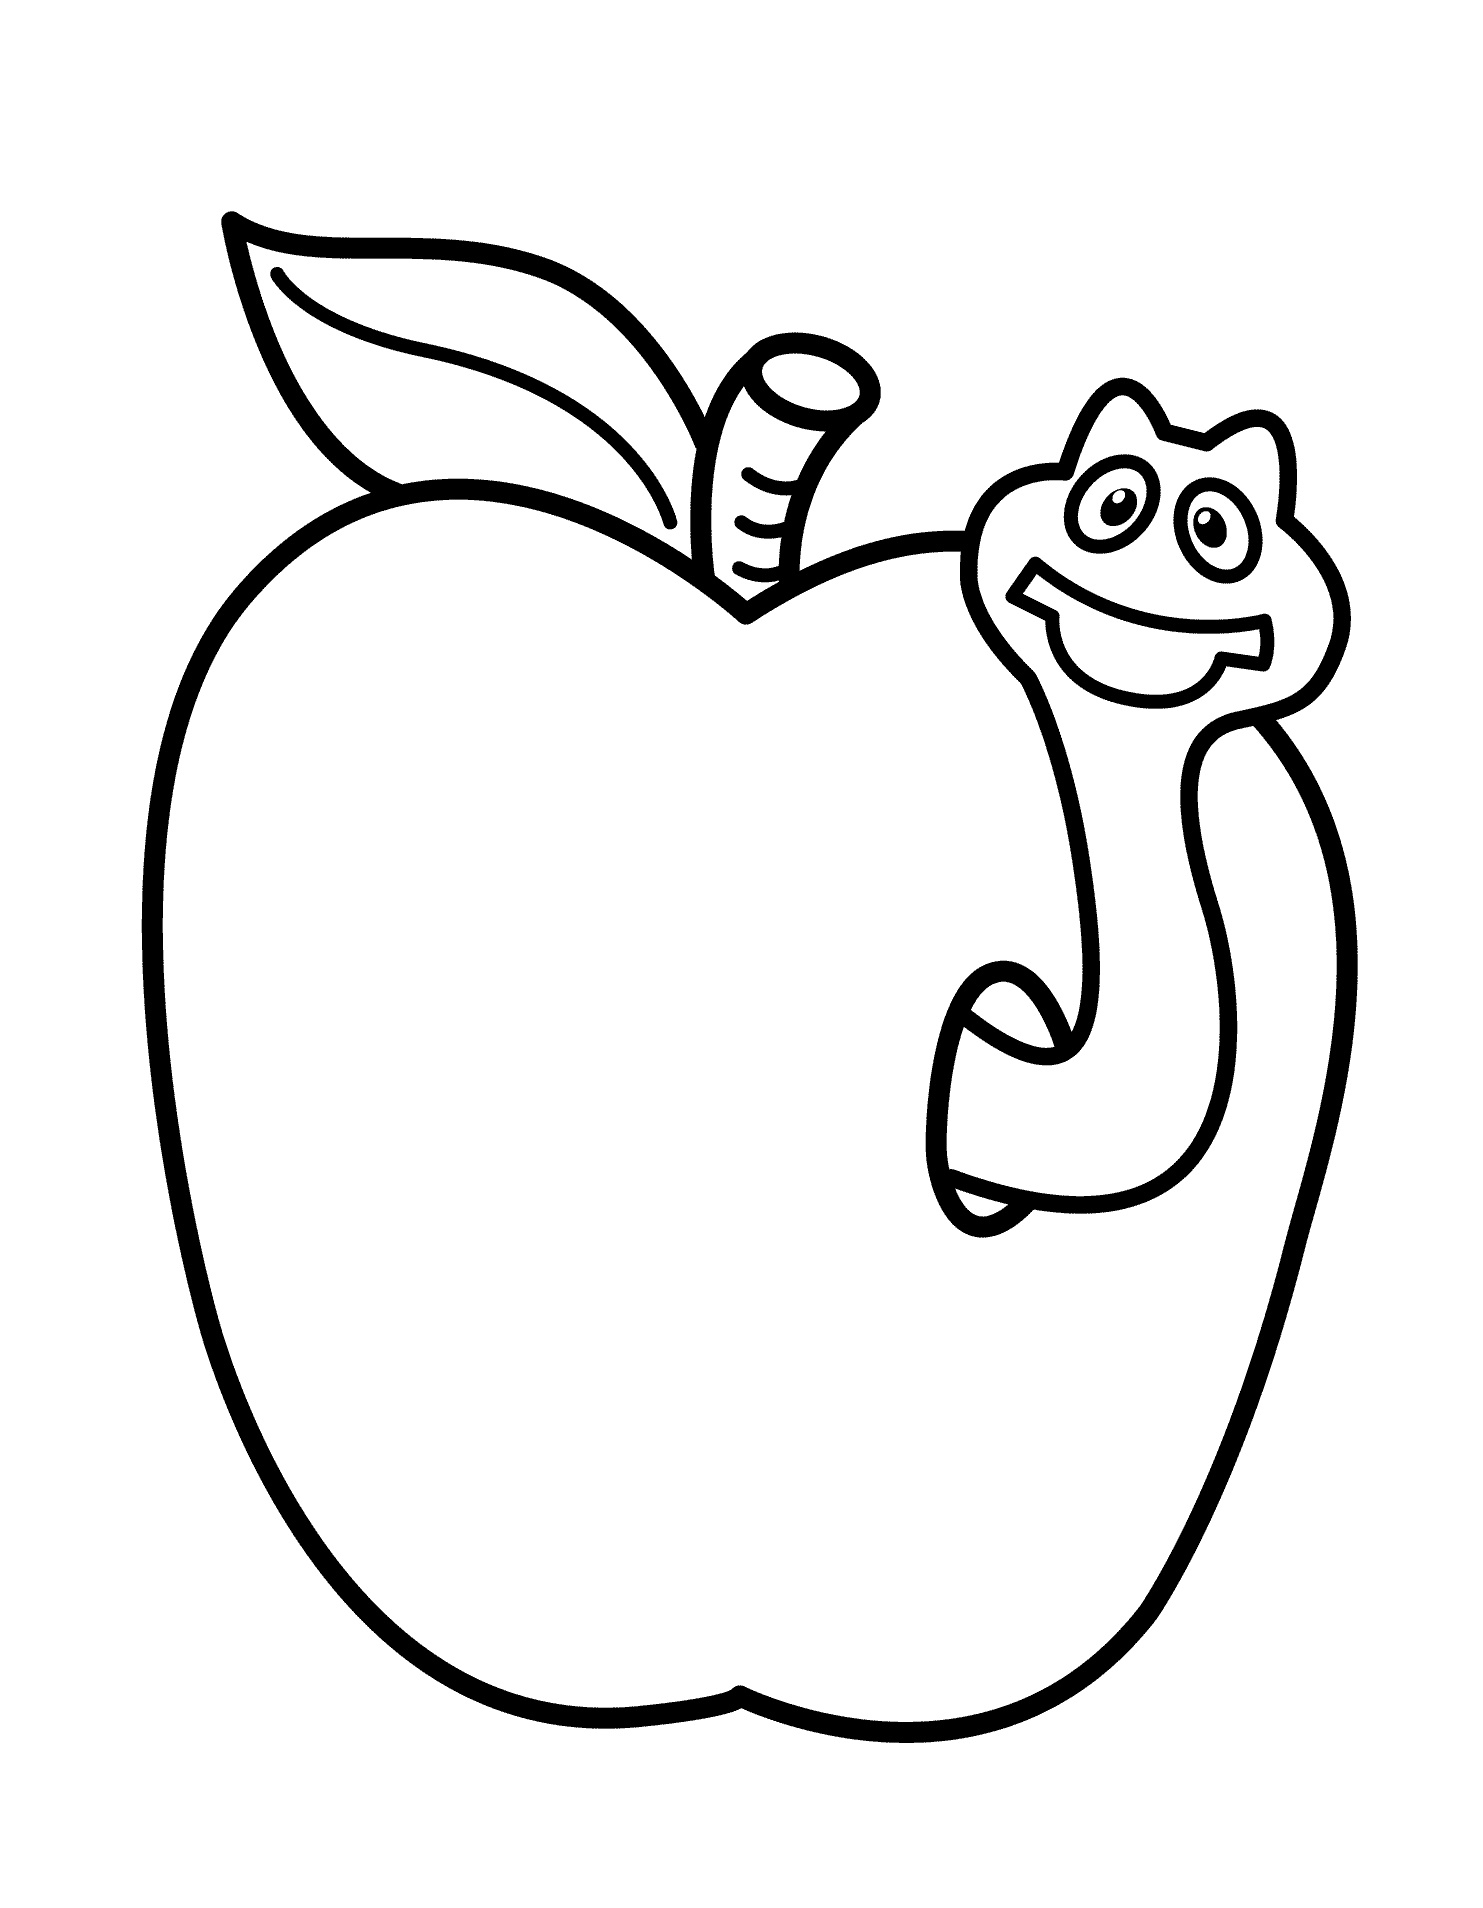 Яблоко с сервяком расскра